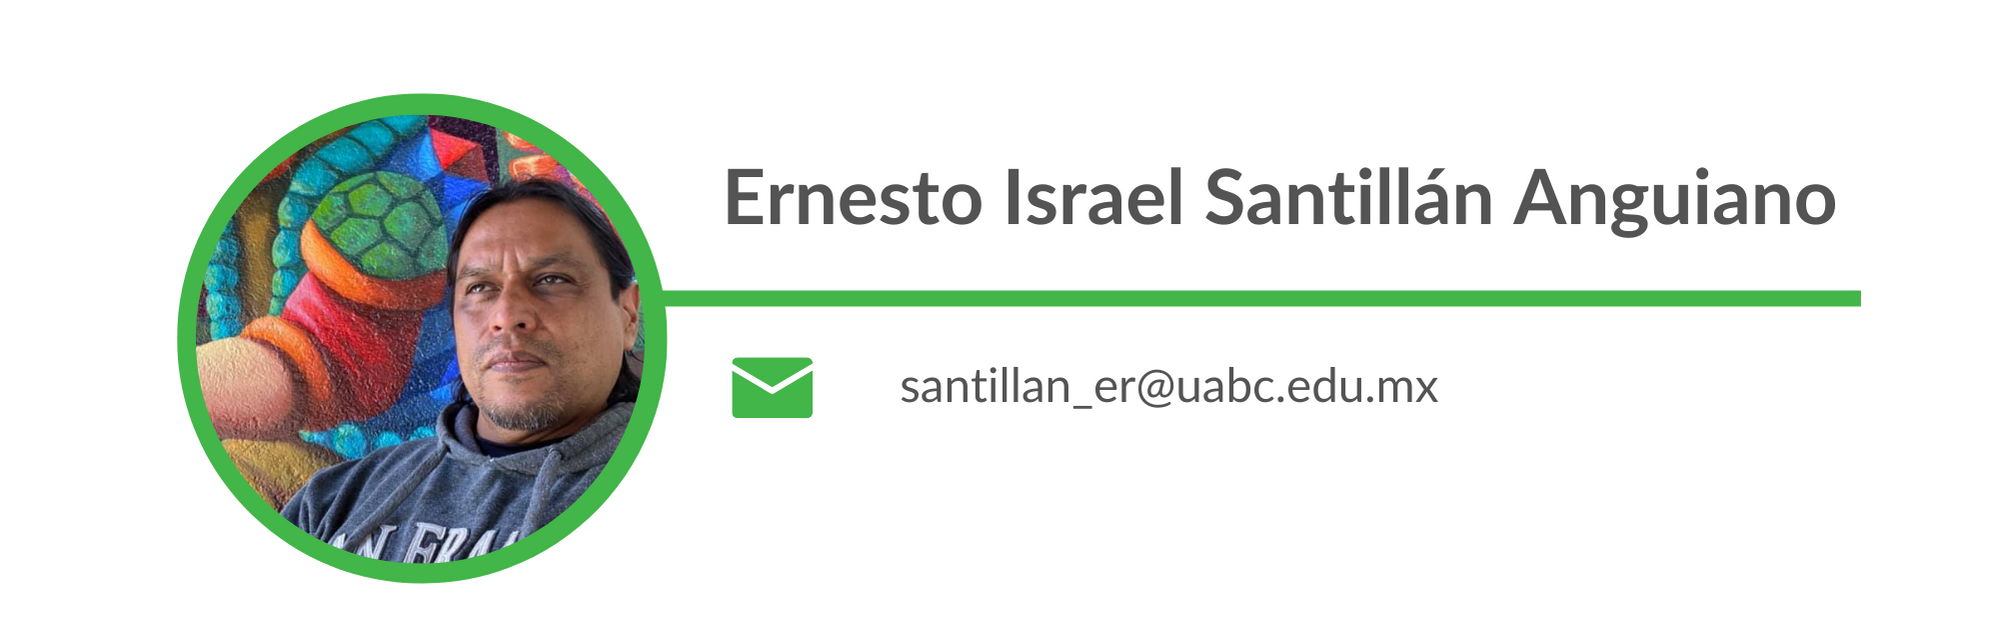 Ernesto Israel Santillán Anguiano. Email: santillan_er@uabc.edu.mx